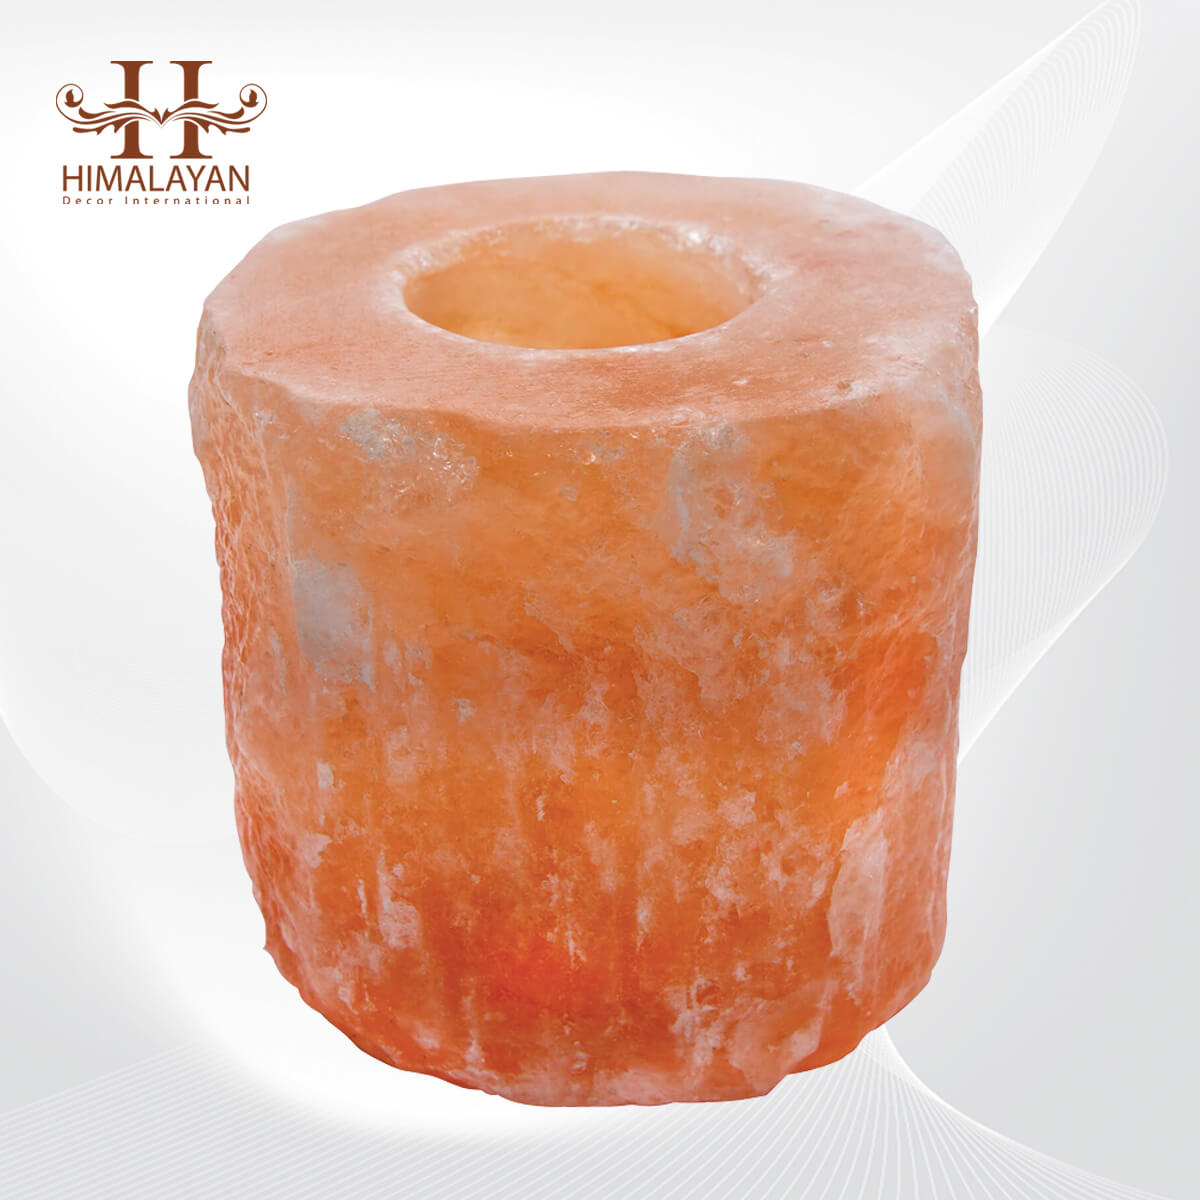 4 X HIMALAYAN SALT CANDLE  HOLDER  TEA LIGHT  NATURAL SHAPE 